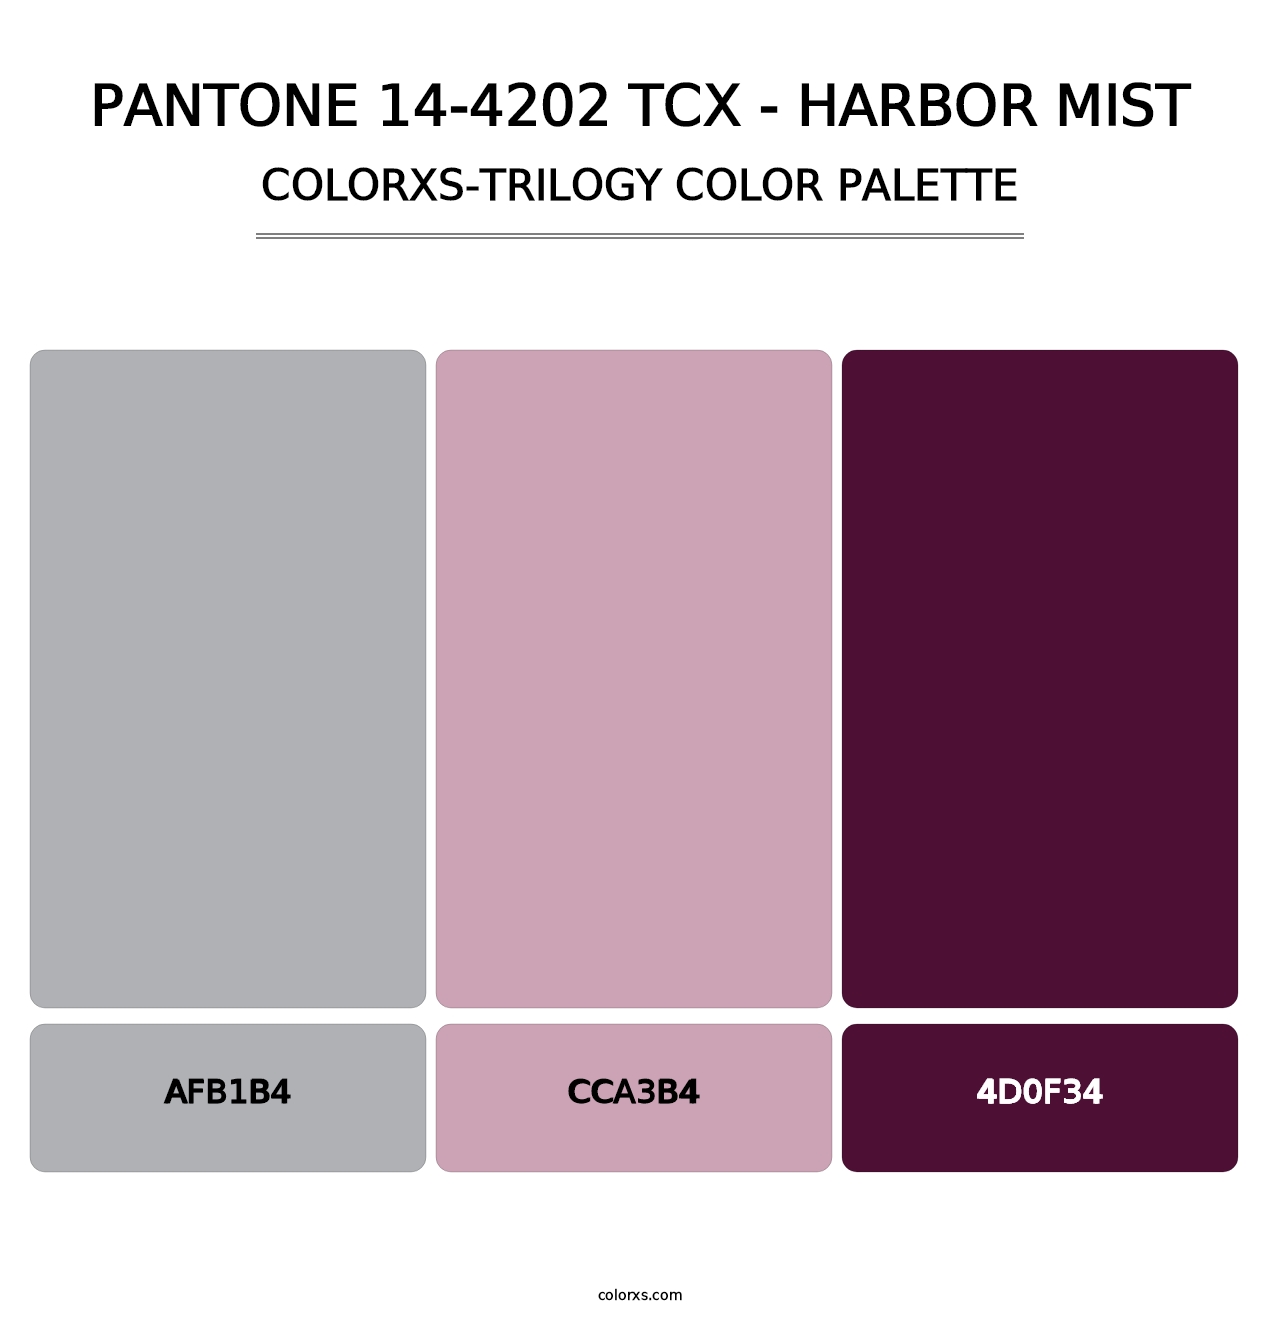 PANTONE 14-4202 TCX - Harbor Mist - Colorxs Trilogy Palette